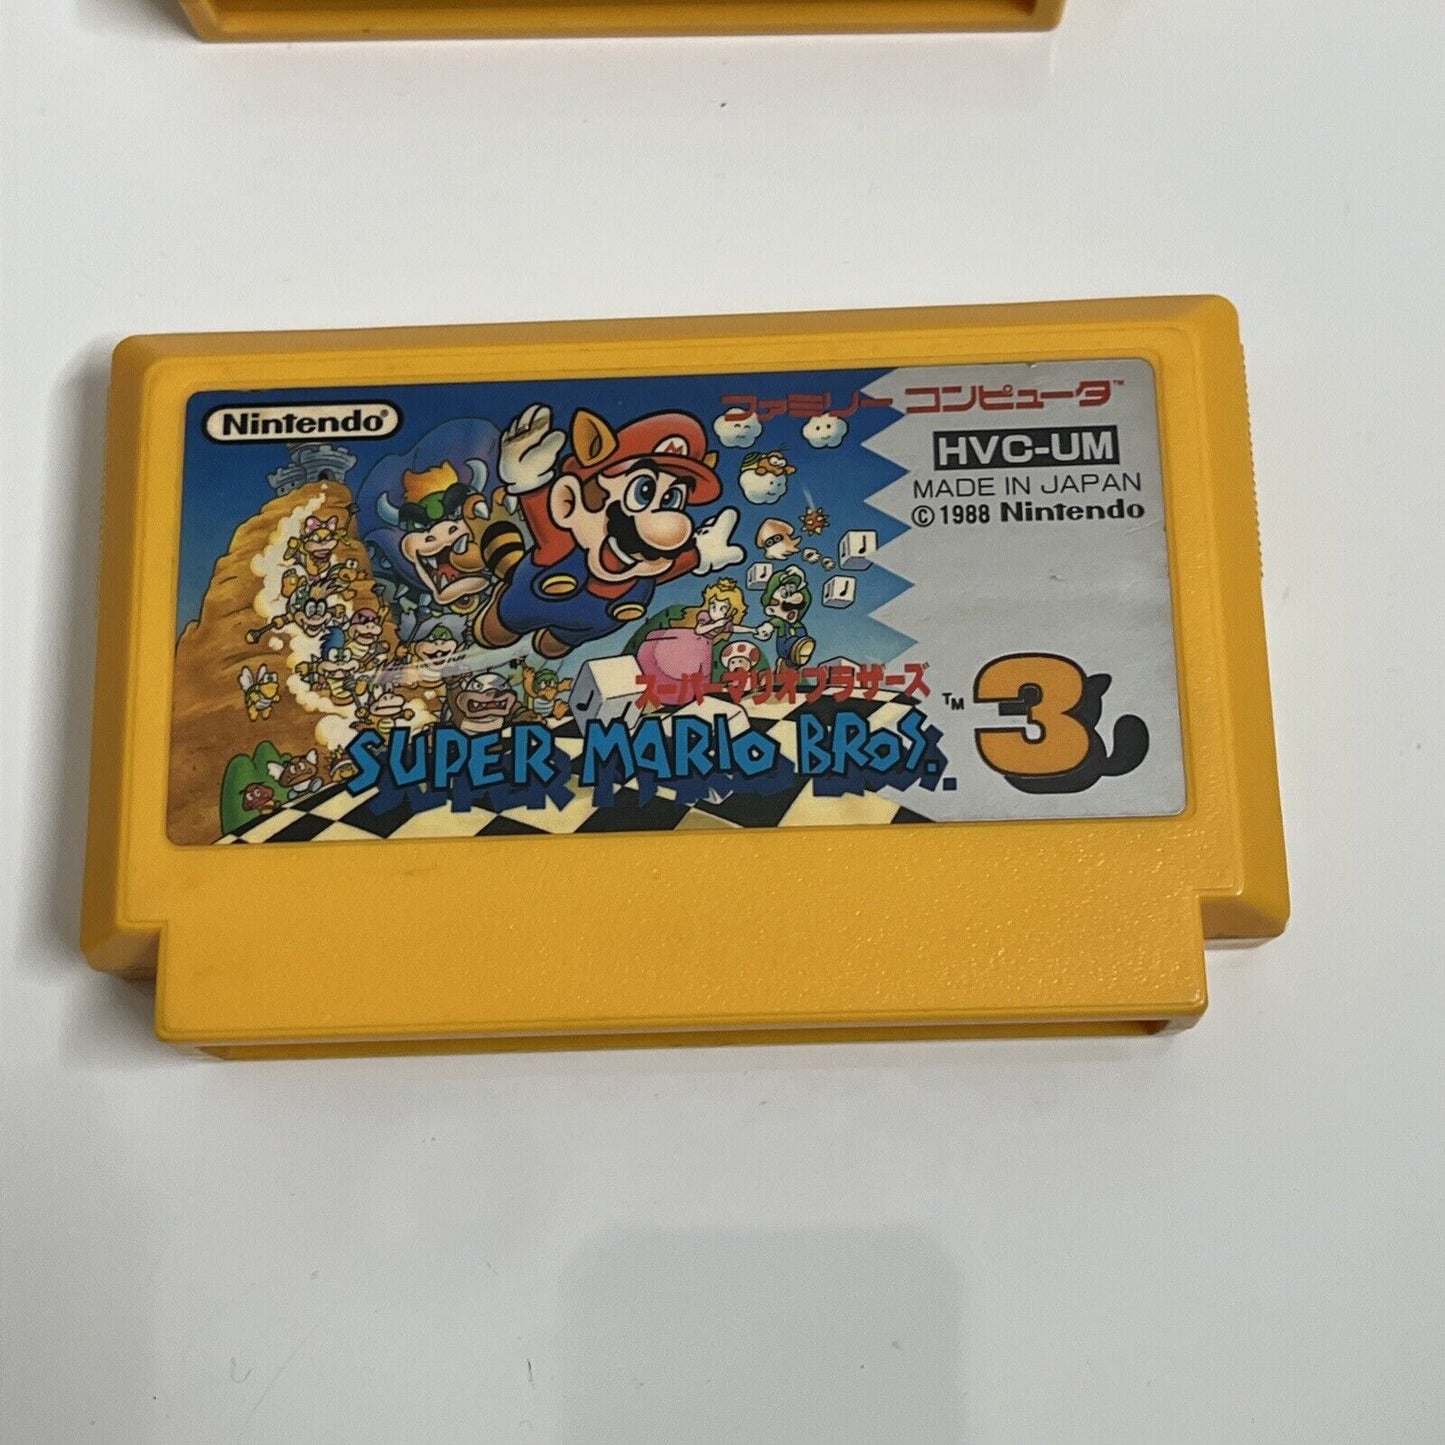 Super Mario Bros 1 + 3 - Nintendo Famicom NES NTSC-J JAPAN 1988 Platformer Game